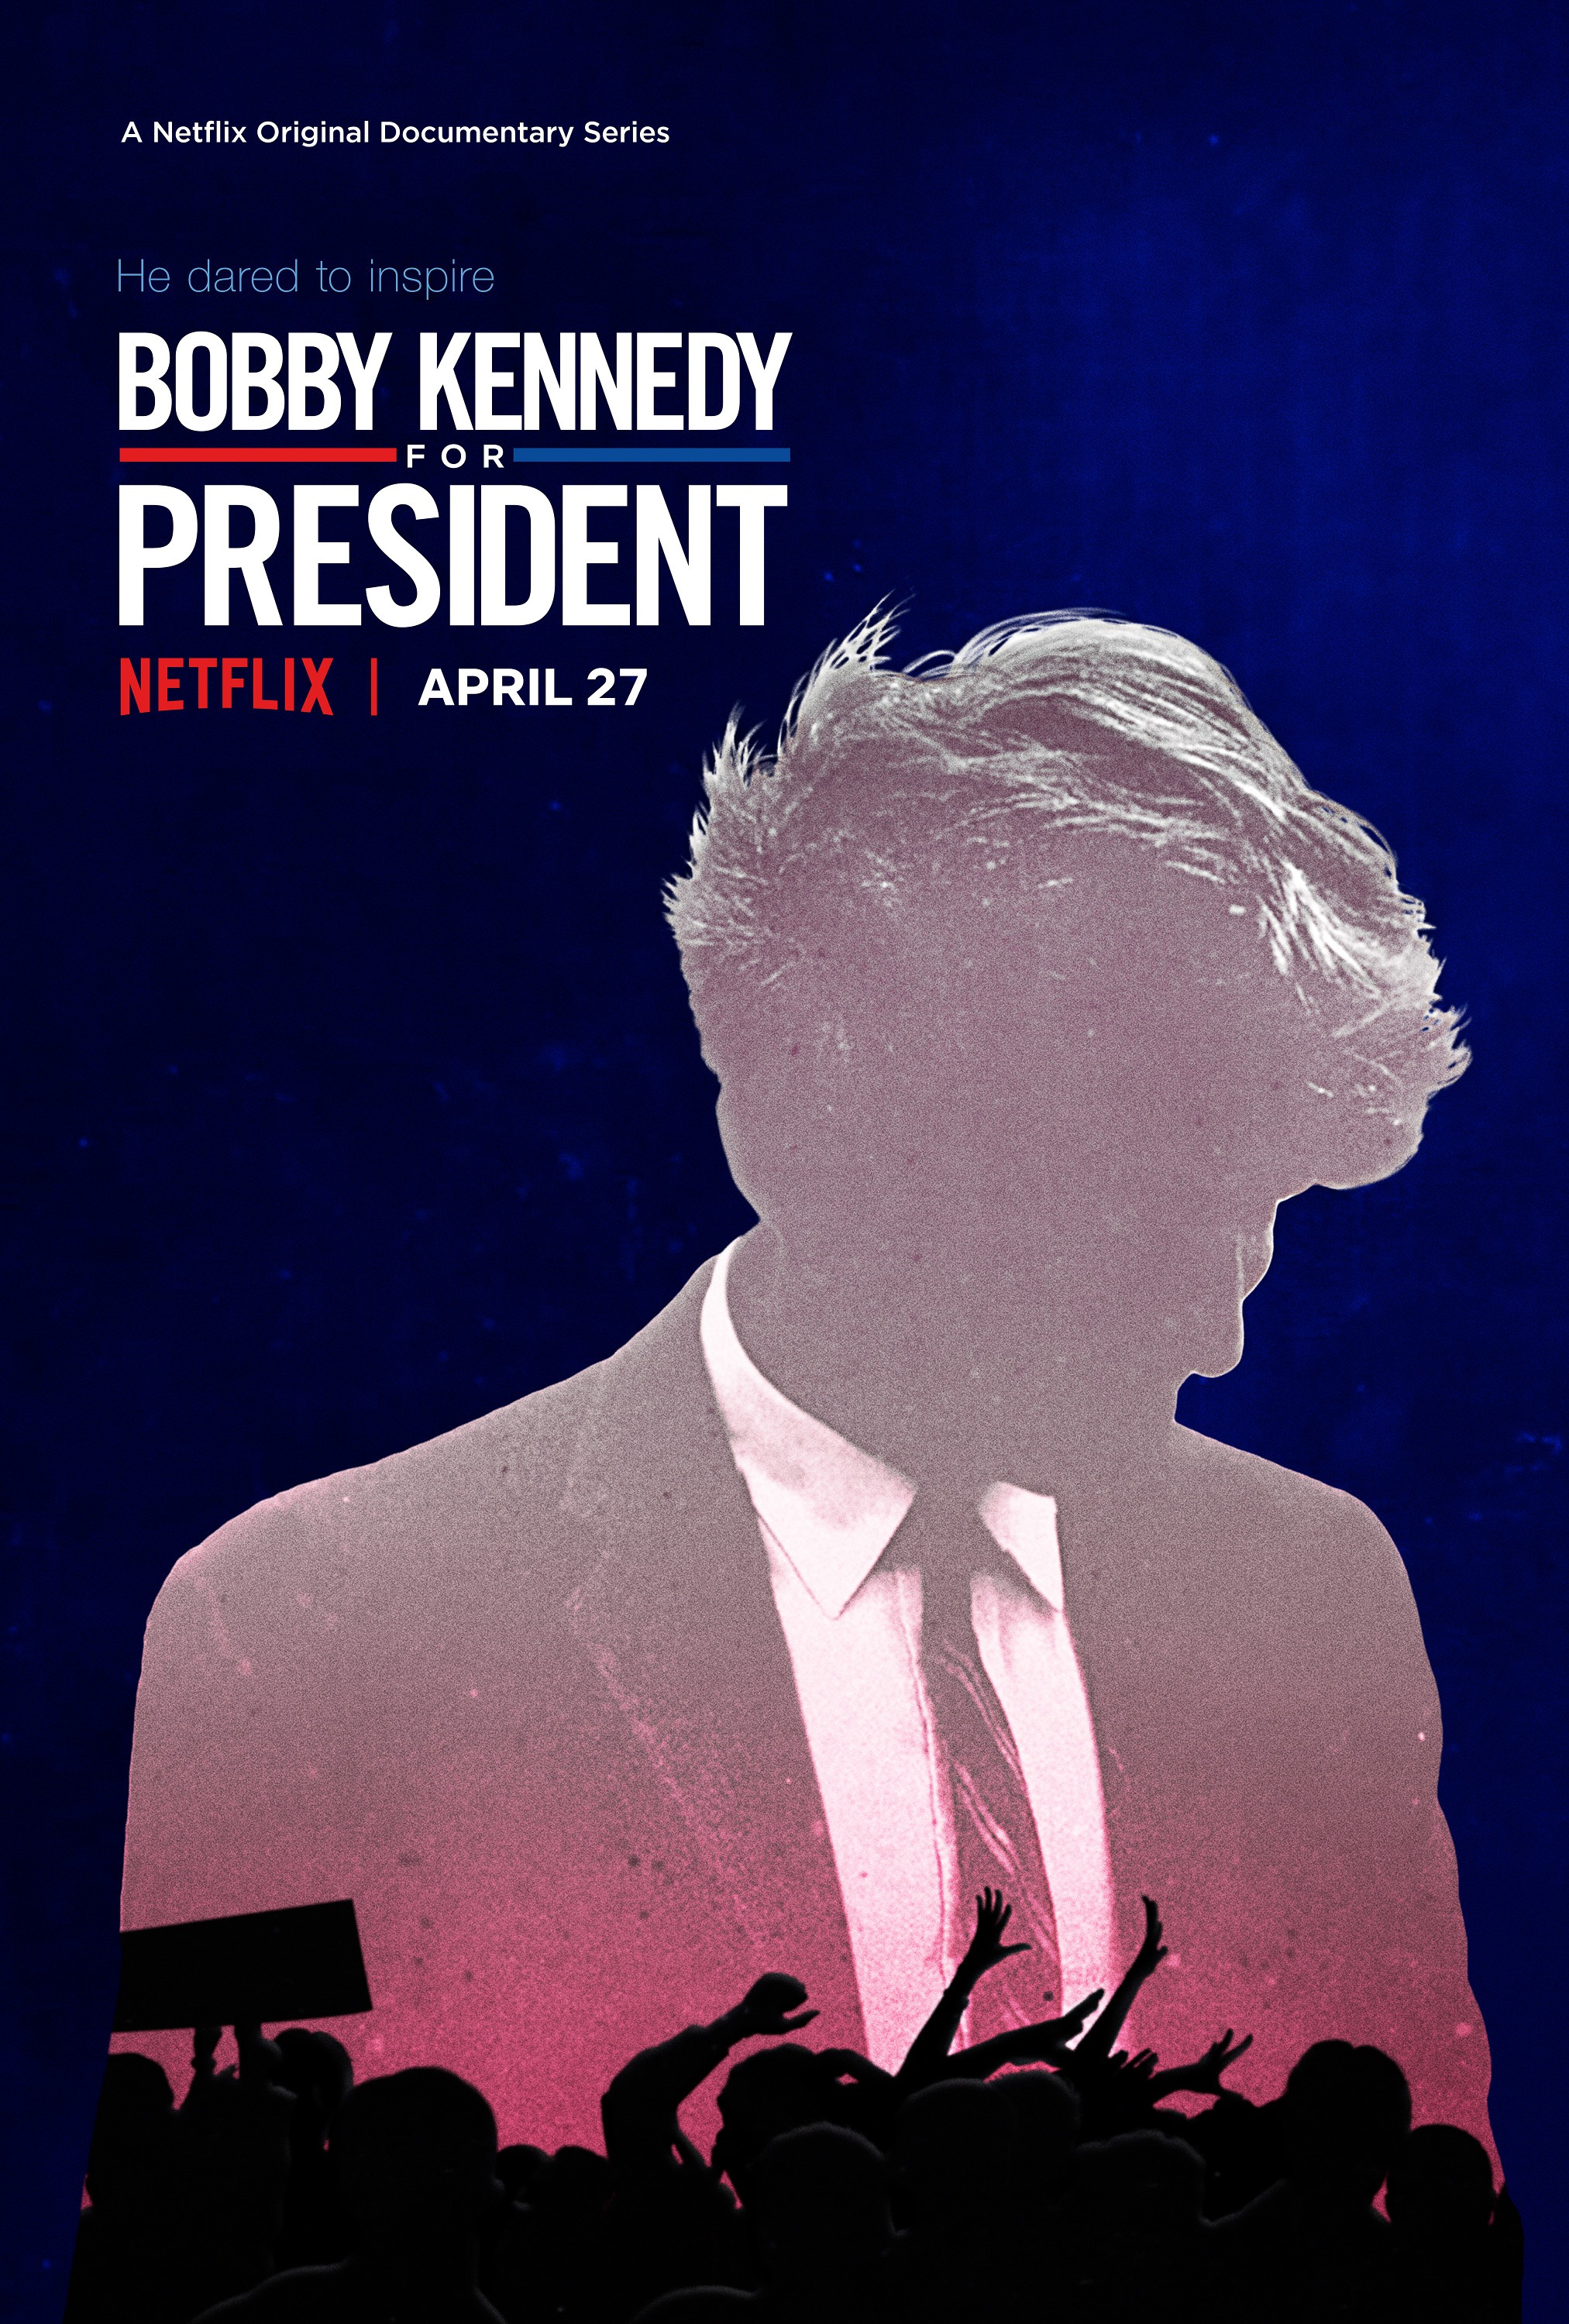 Mega Sized TV Poster Image for Bobby Kennedy for President 